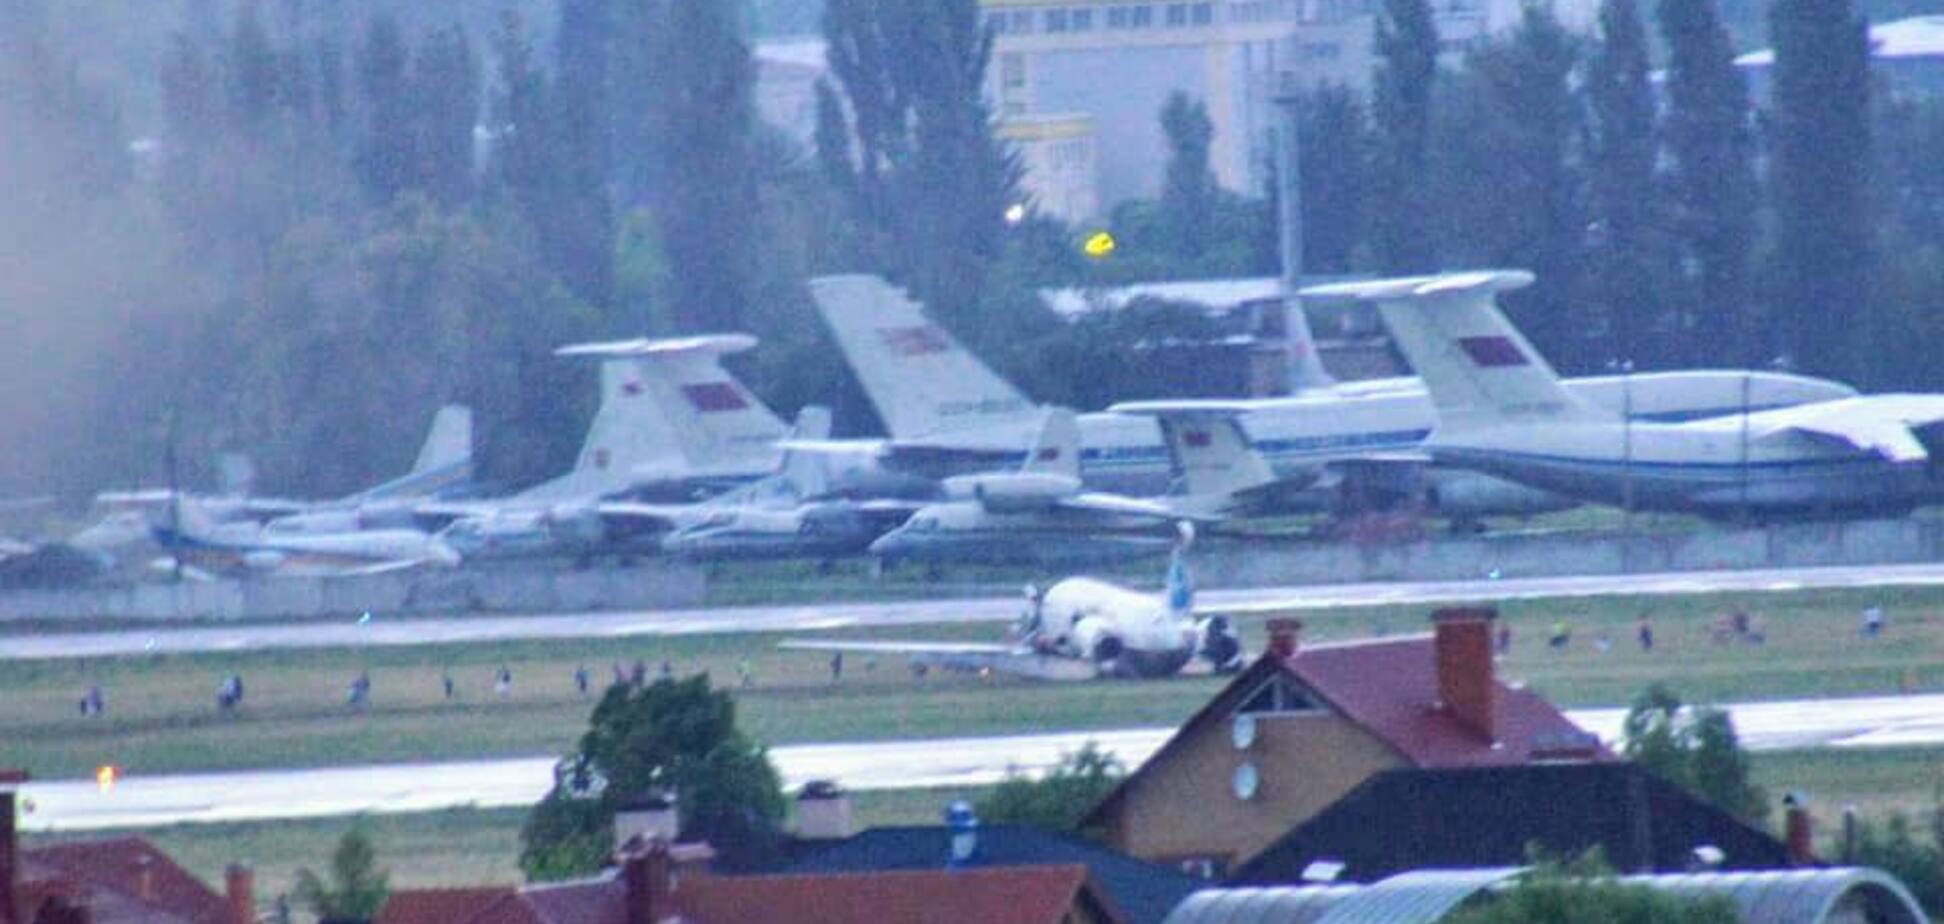 ЧП в аэропорту Киева: появились первые фото с самолетом